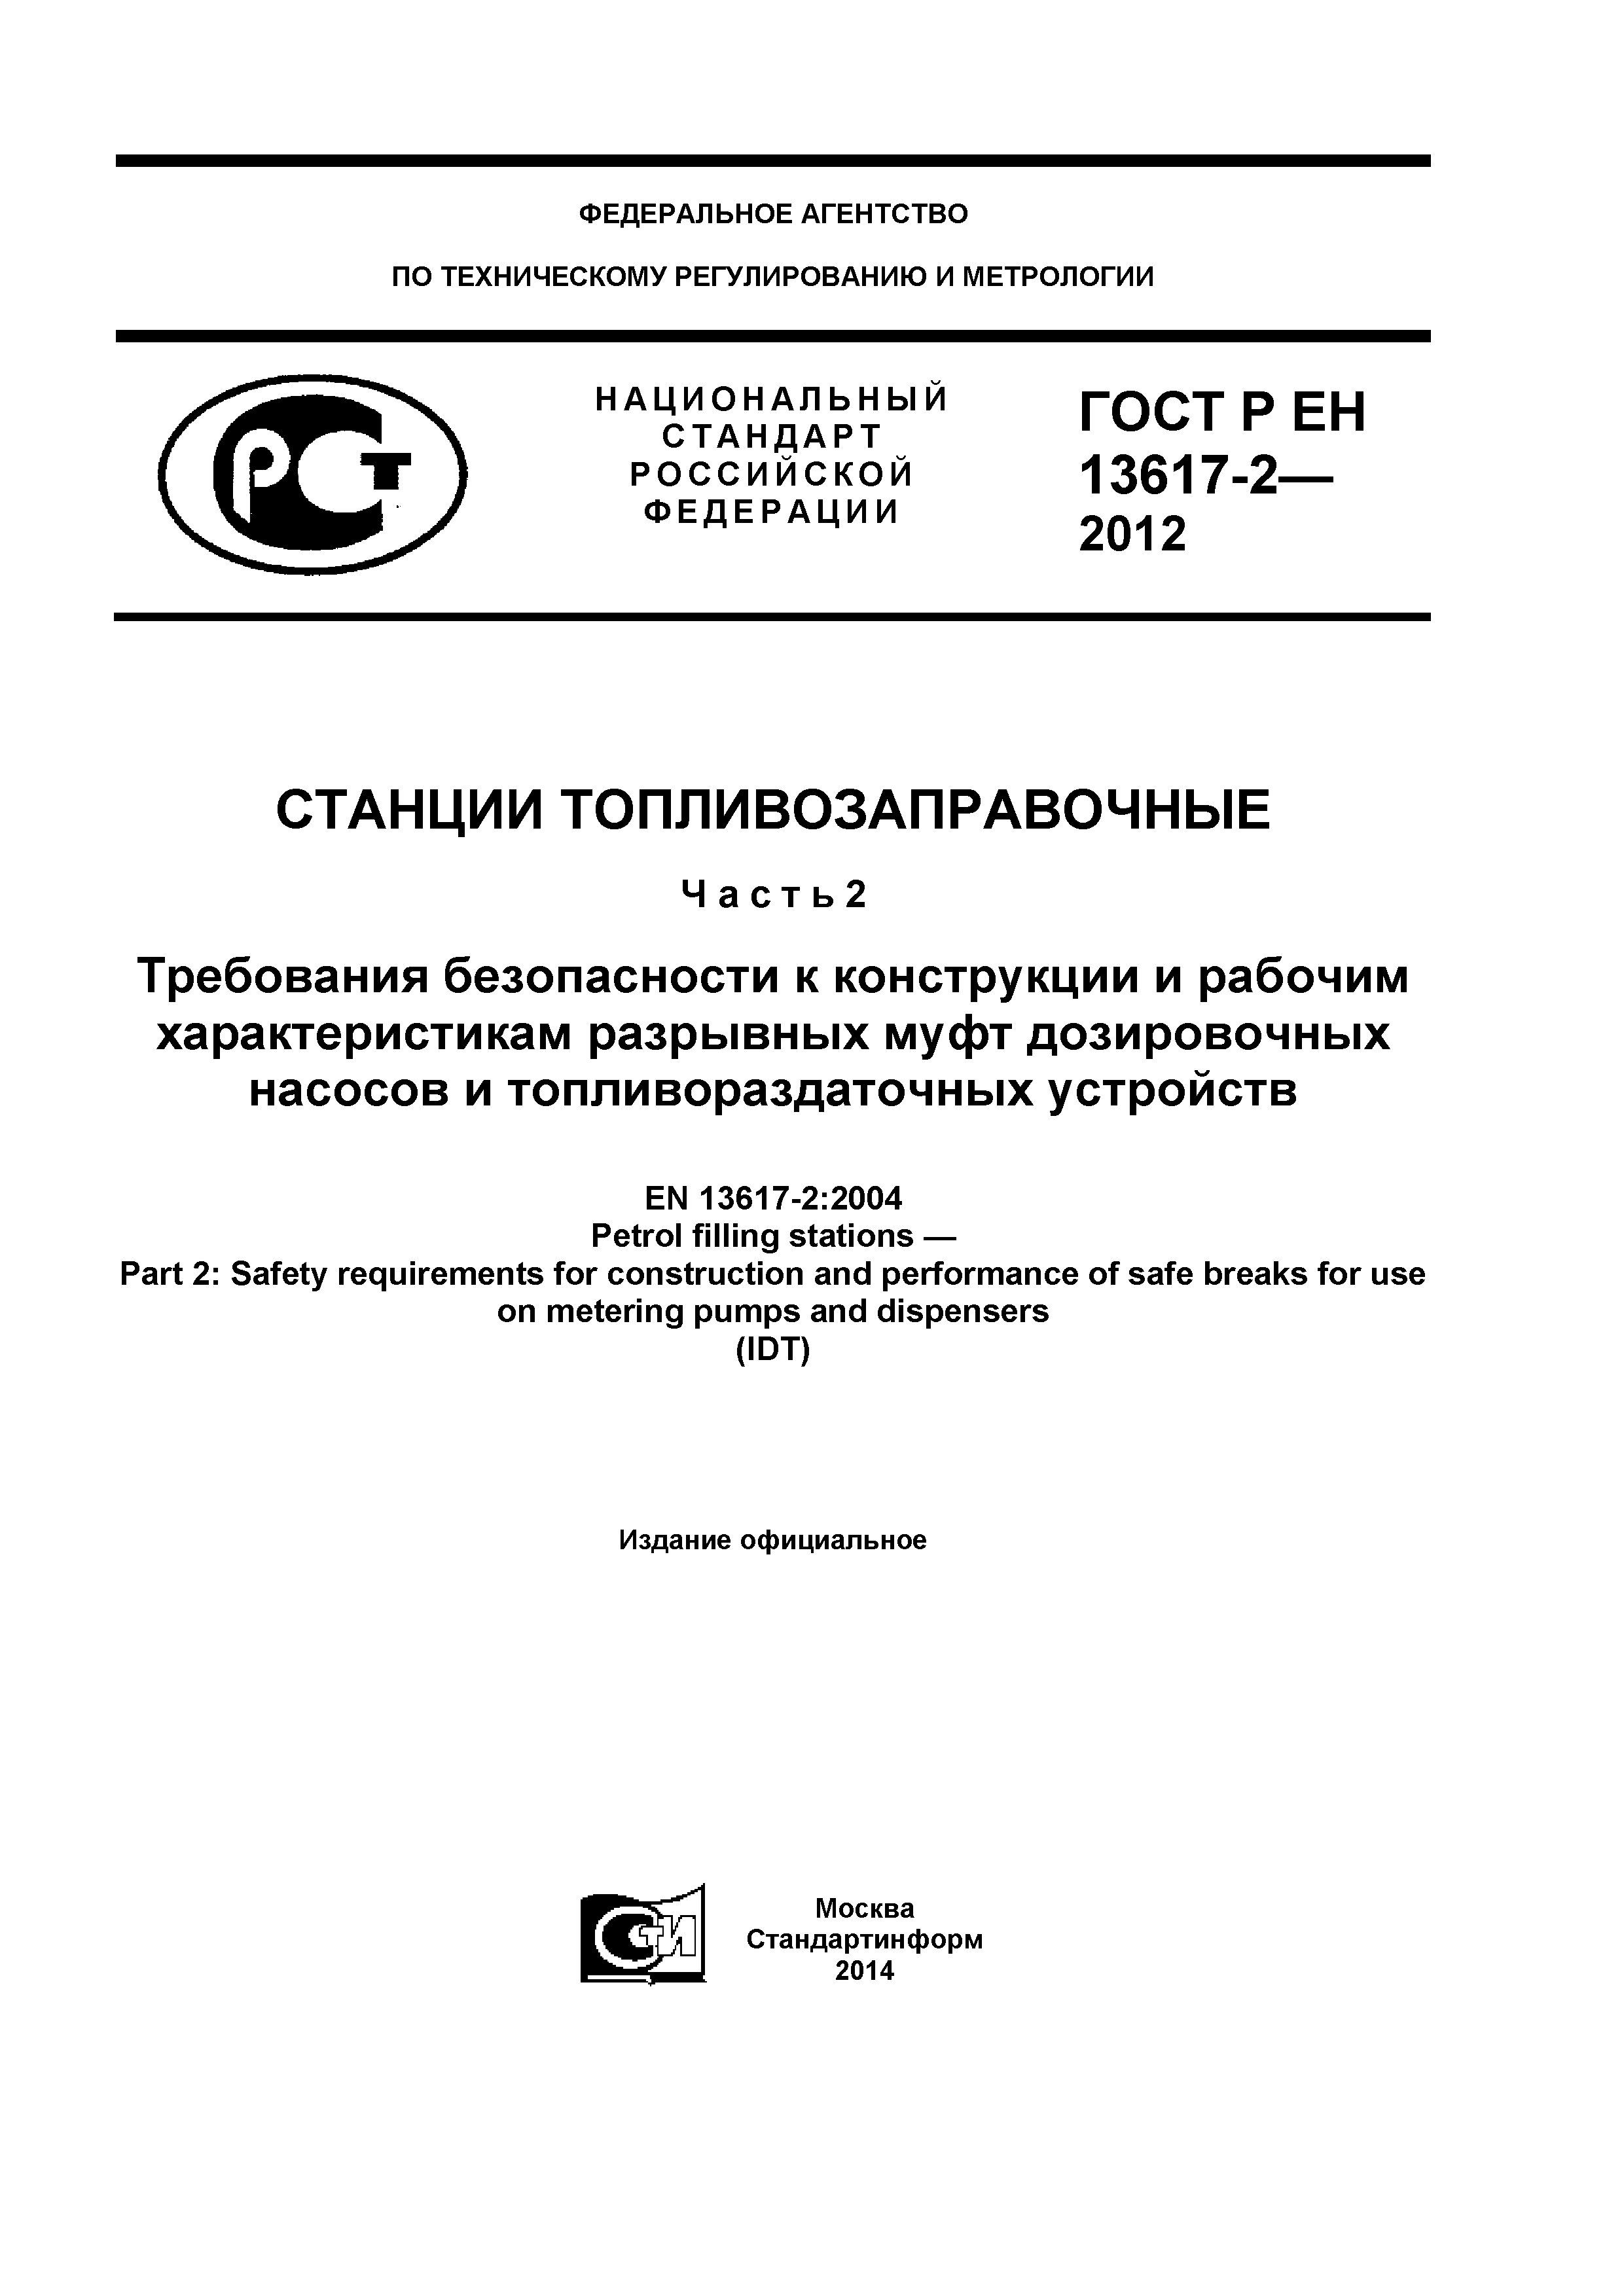 ГОСТ Р ЕН 13617-2-2012